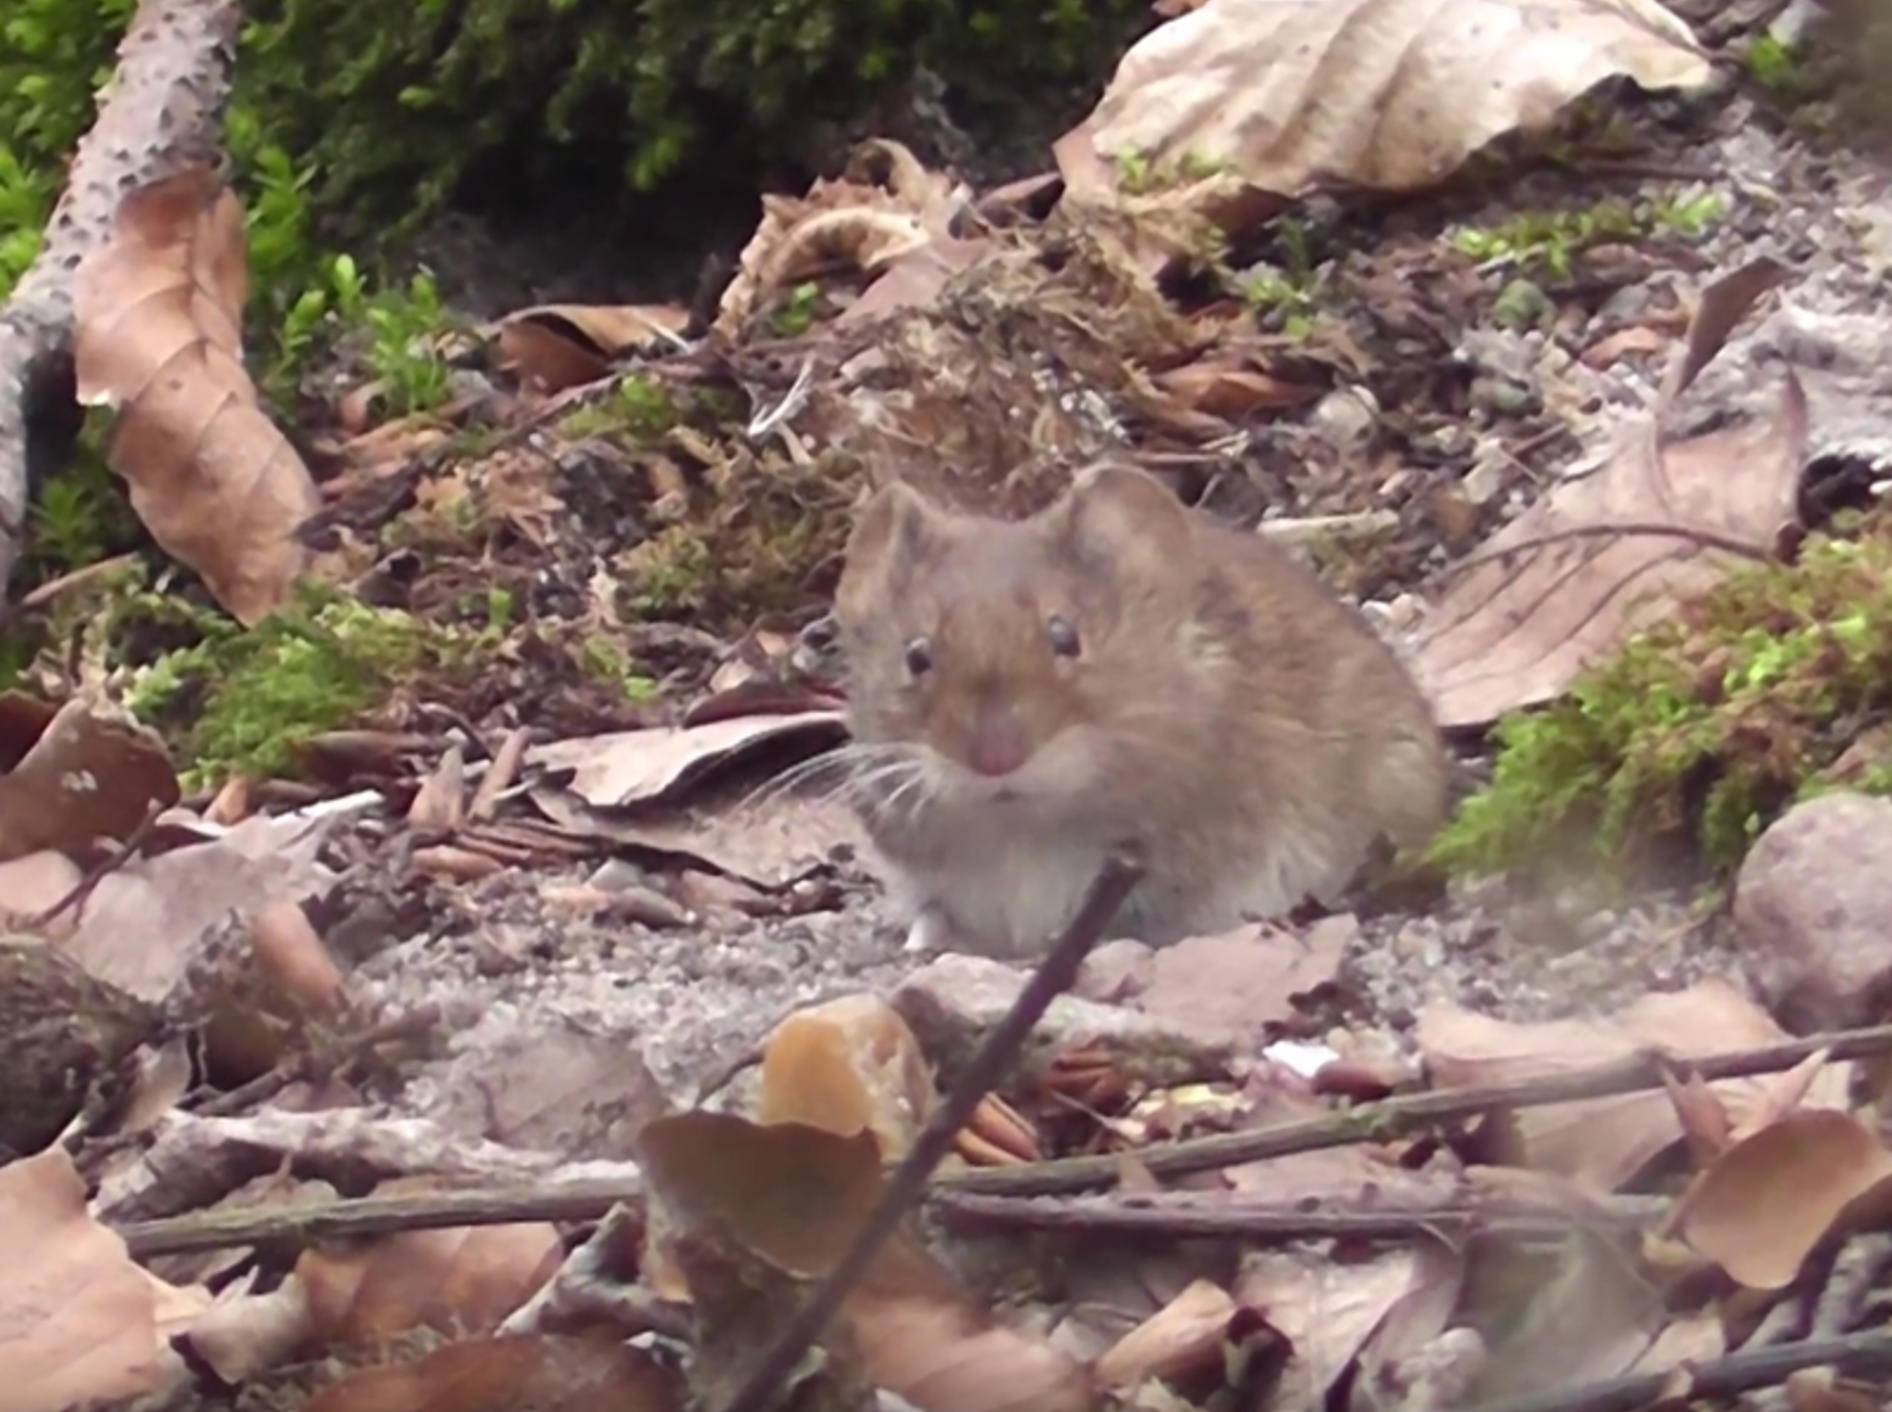 Niedliche Maus im Wald tut sich an Bucheckern gütlich – YouTube/mbhsug